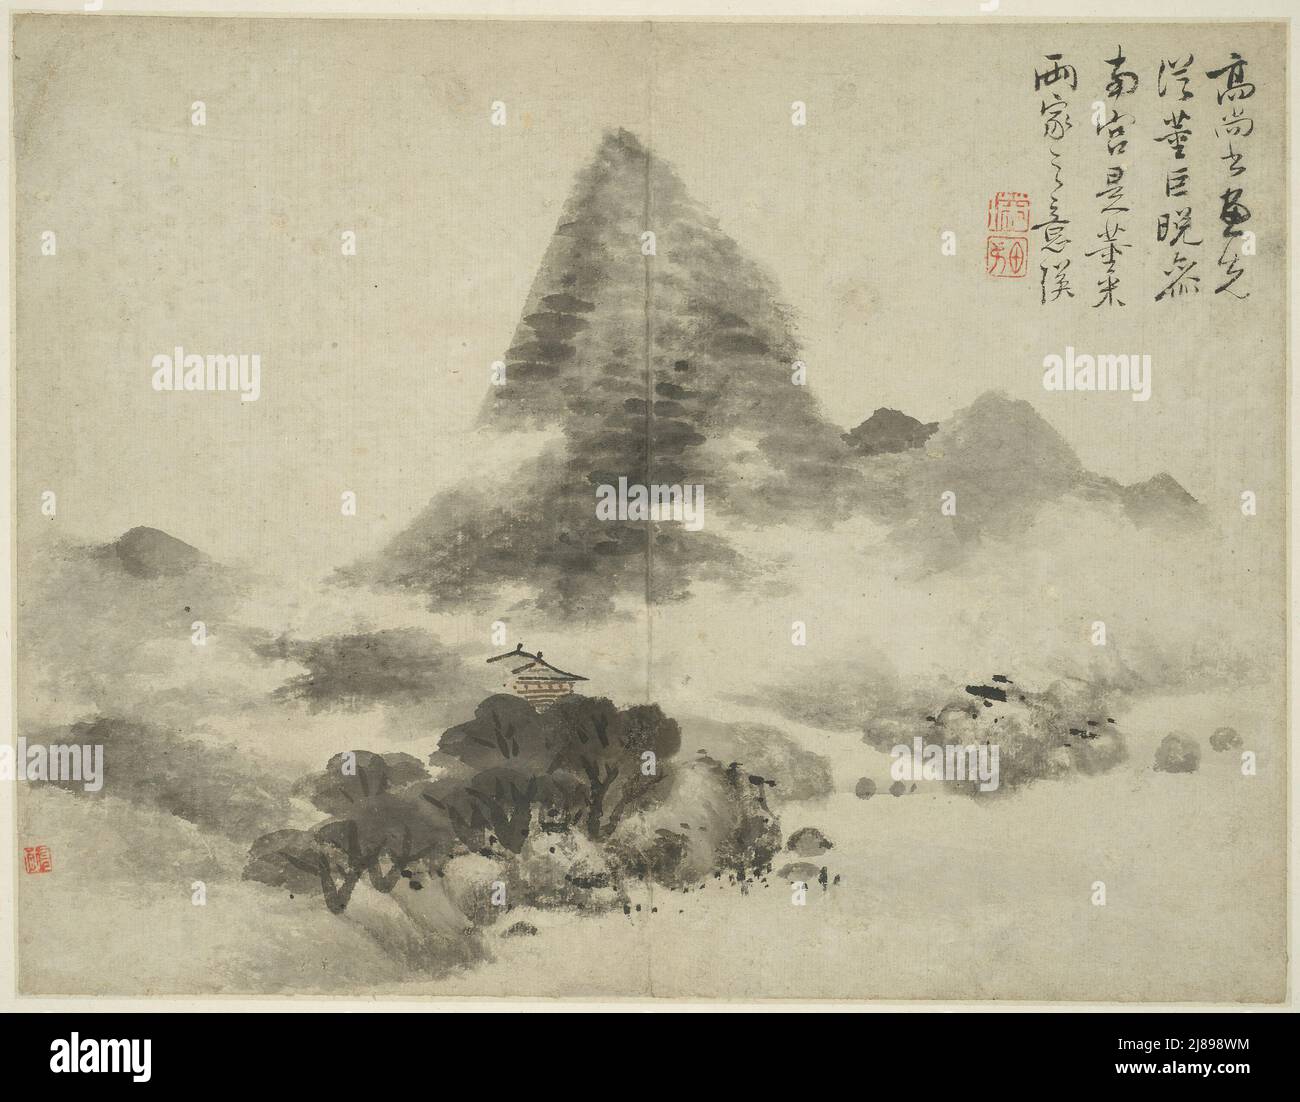 Paysage dans le style des maîtres anciens: Après Gao Shangshu, suivant Dong Yuan (actif 937-975) et Ju couru, et plus tard dans le style de mi Fu (1051 -1107), Chine, Ming dynastie (1368-1644), 1642. Banque D'Images